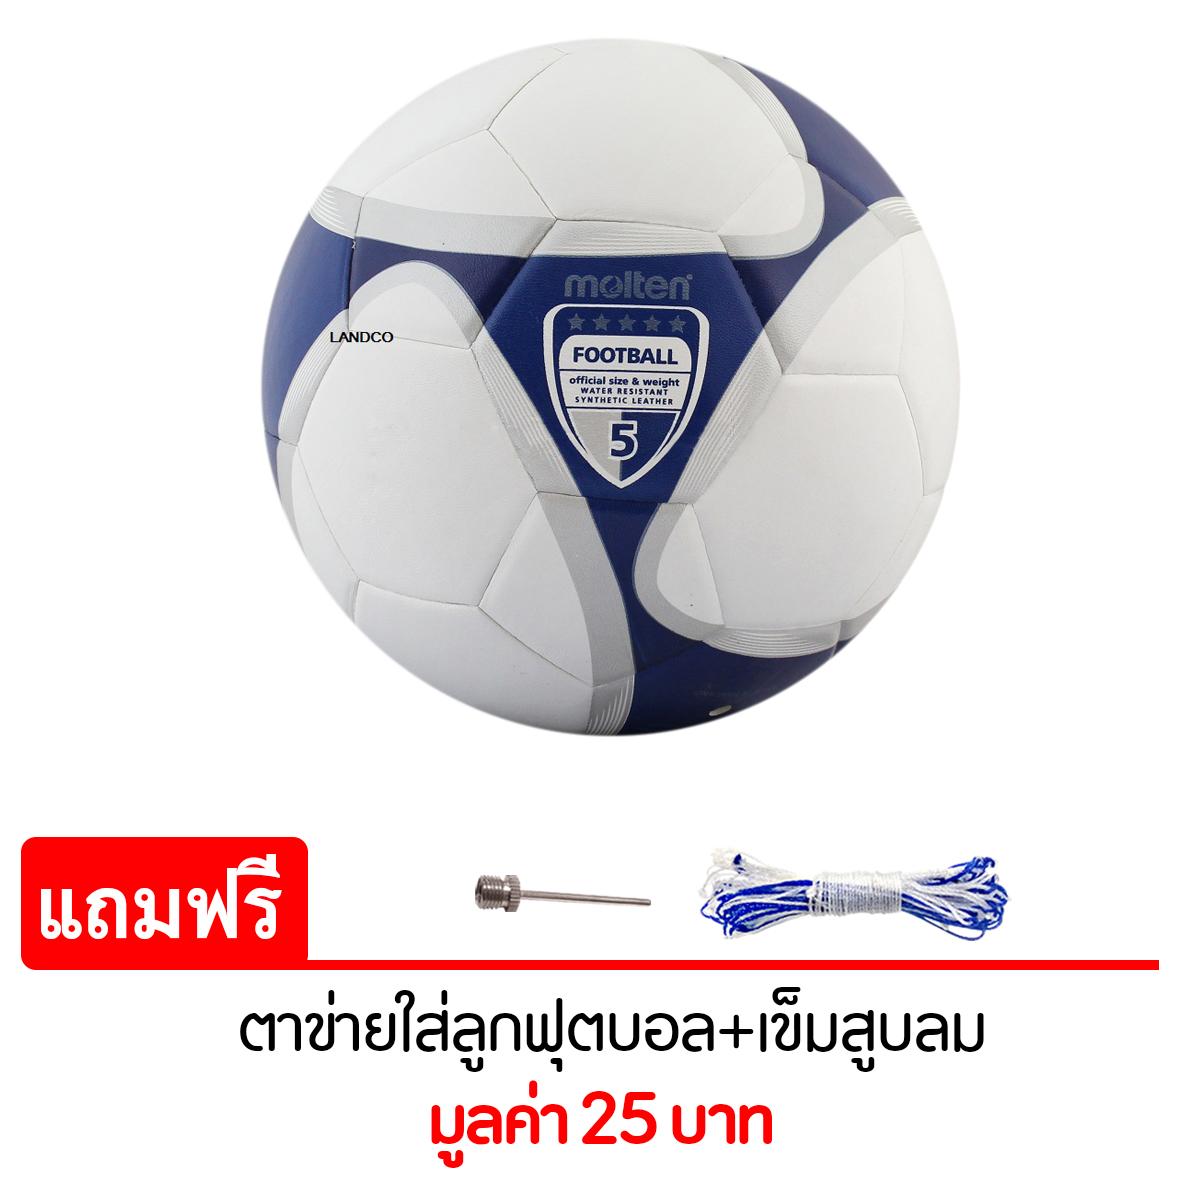 MOLTEN ฟุตบอล PVC F5VCL-CLY2 เบอร์ 5 แถมฟรี ตาข่ายใส่ลูกฟุตบอล + เข็มสูบลม